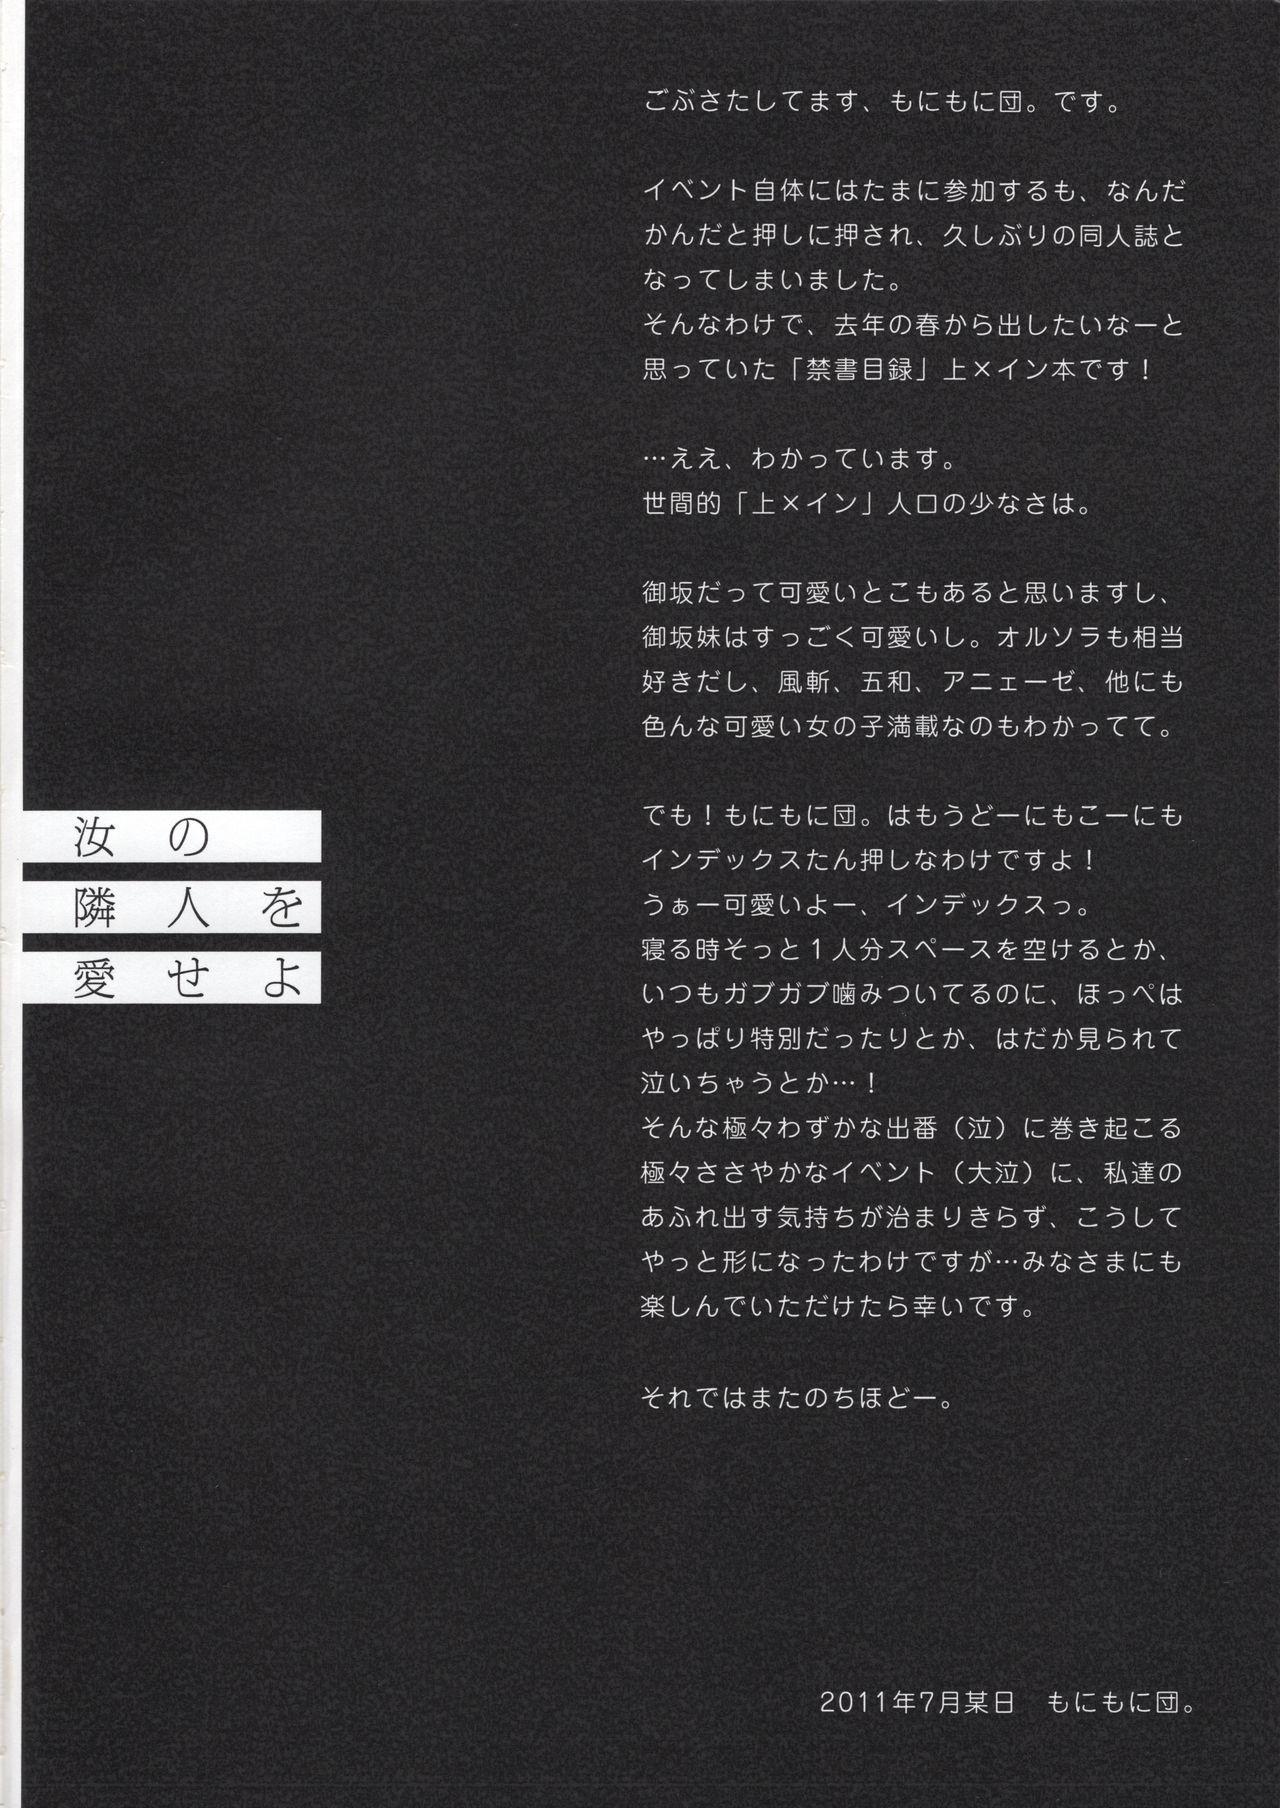 Con Nanji no Rinjin o Aiseyo - Toaru majutsu no index | a certain magical index Moneytalks - Page 4